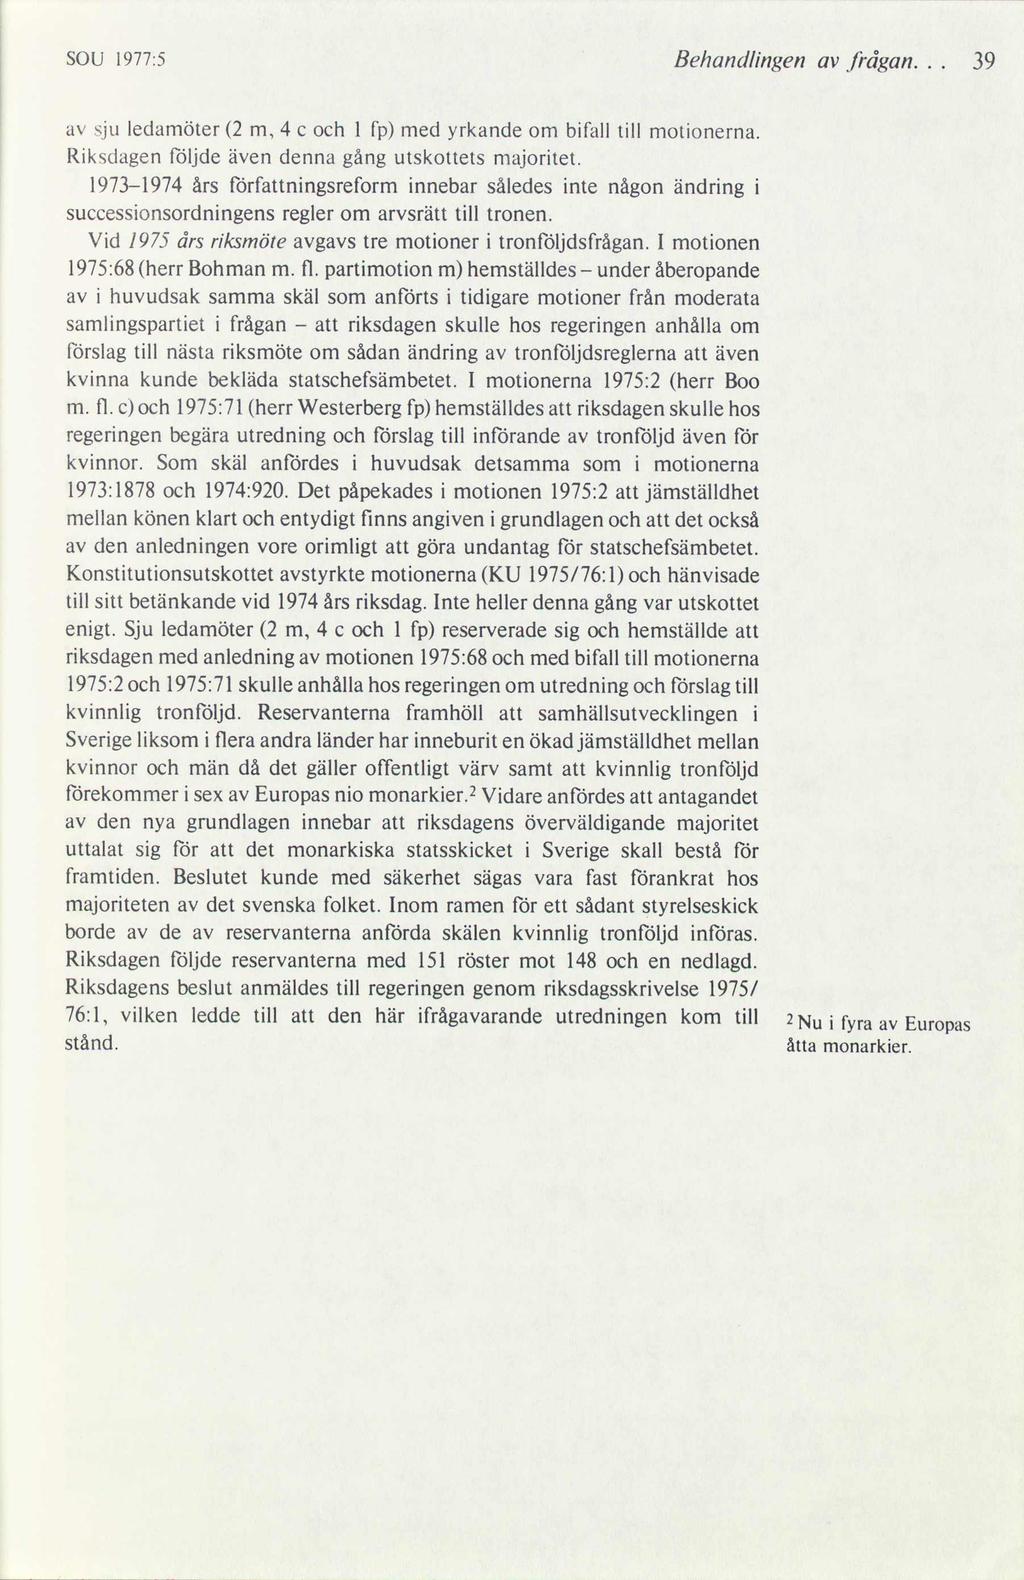 SOU 1977:5 Behandlingen av frågan... 39 av sju ledamöter (2 m, 4 c och l fp) med yrkande om bifall till motionerna. Riksdagen följde även denna gång utskottets majoritet.